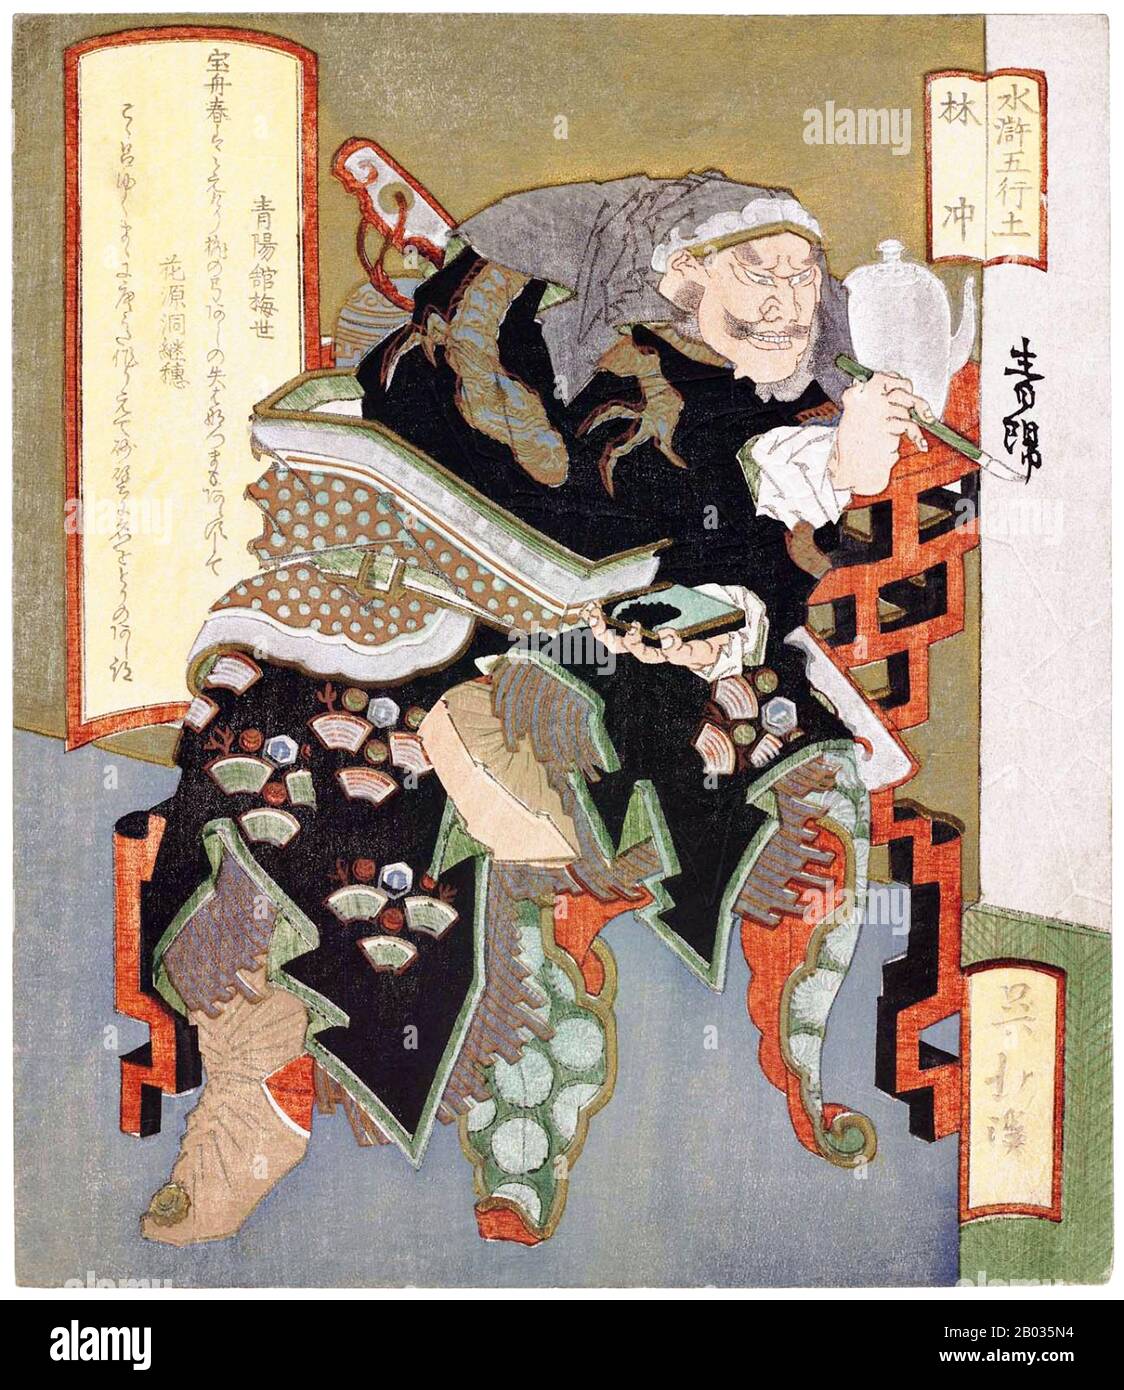 Totoya Hokkei era un illustratore di libri e stampatori giapponesi. Inizialmente studiò pittura con Kano Yyen (1735-1808), capo del ramo di Kobikicho della scuola di Kano e okaeshi (pittore ufficiale) allo shogunato di Tokugawa. Insieme a Teisai Hokuba (1771-1844), Hokkei era uno dei migliori studenti di Katsushika Hokusai. Foto Stock